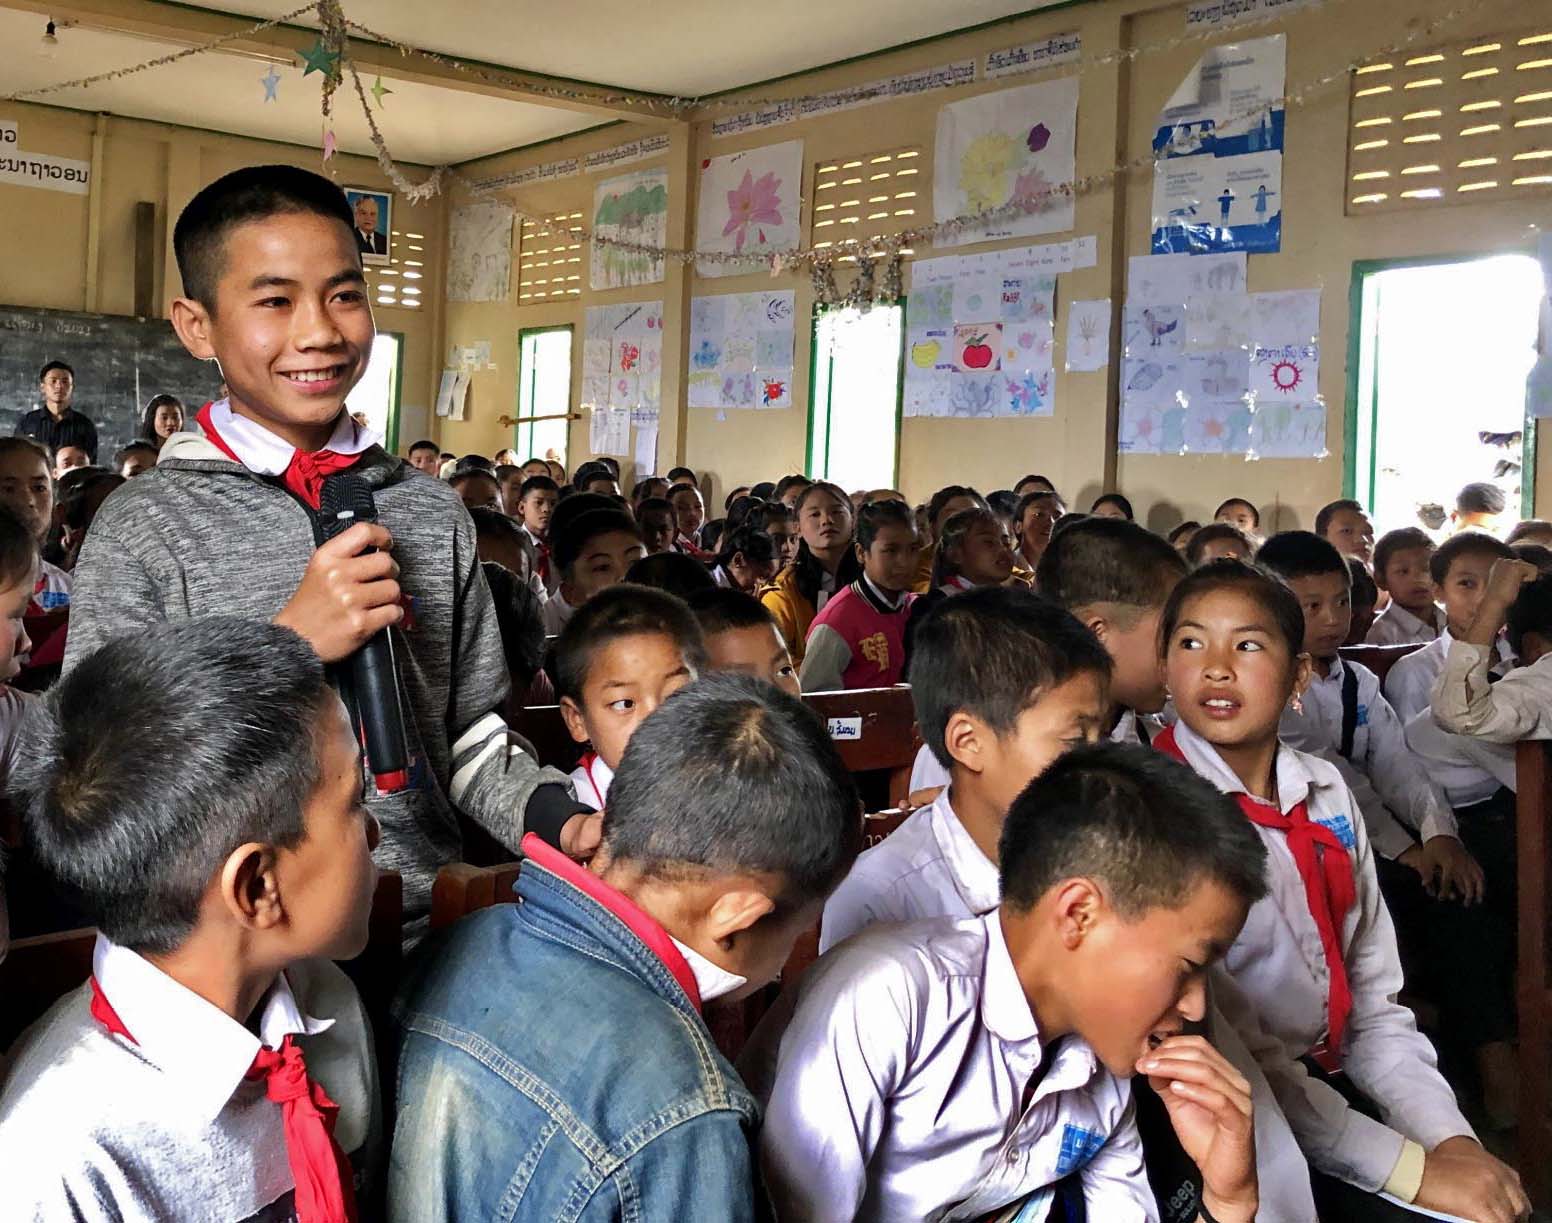 Luokkahuoneessa lapset istuvat pulpettien ääressä. Yksi lapsista seisoo mikrofoni kädessä hymyillen.